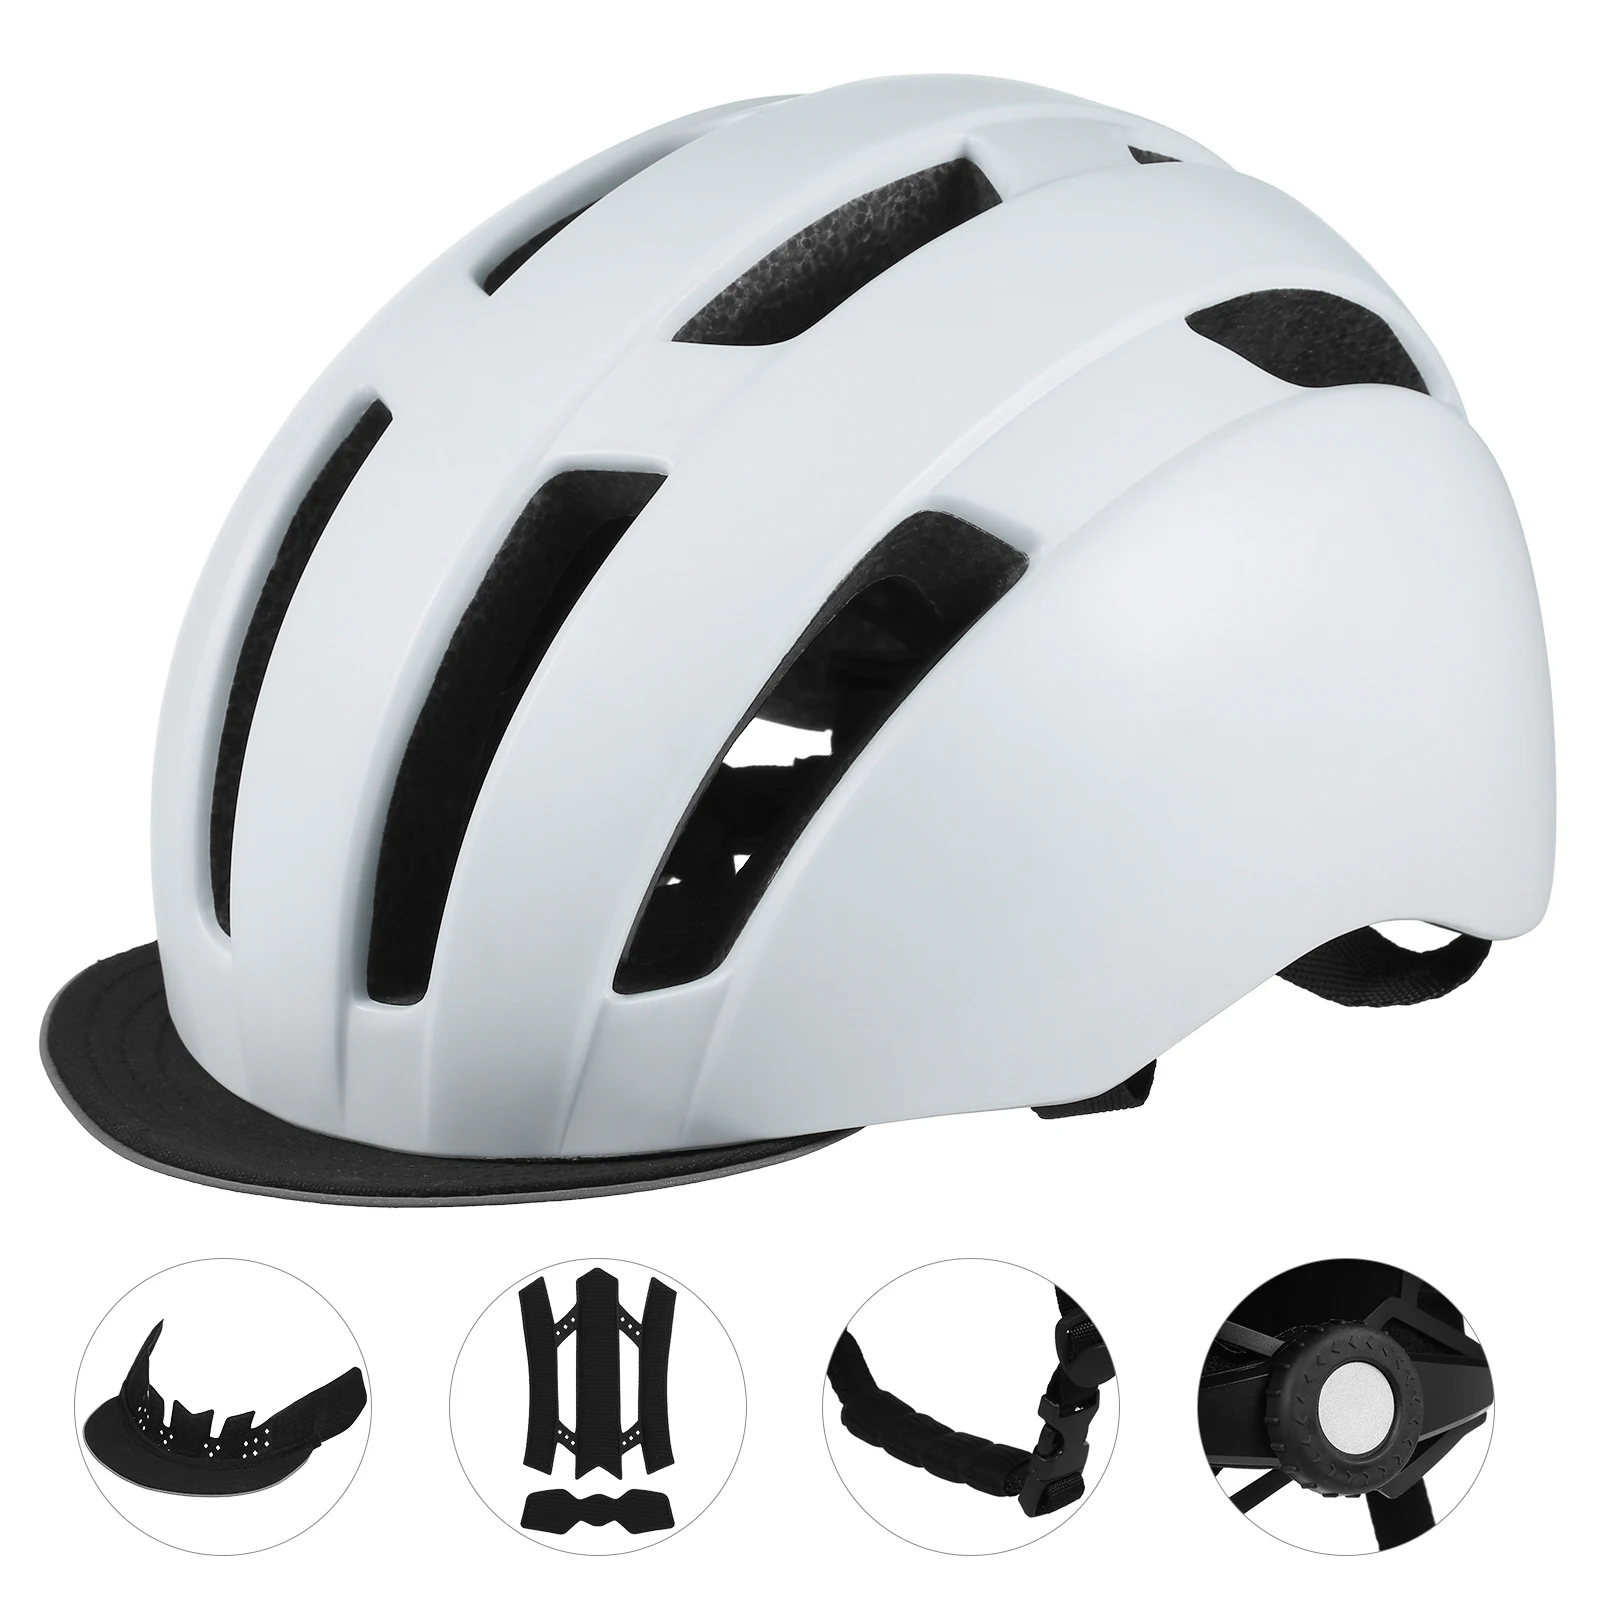 

Велосипедный шлем со съемным козырьком в стиле кепки для мужчин и женщин, мужской дышащий велосипедный шлем для улицы, велосипедный спортив...